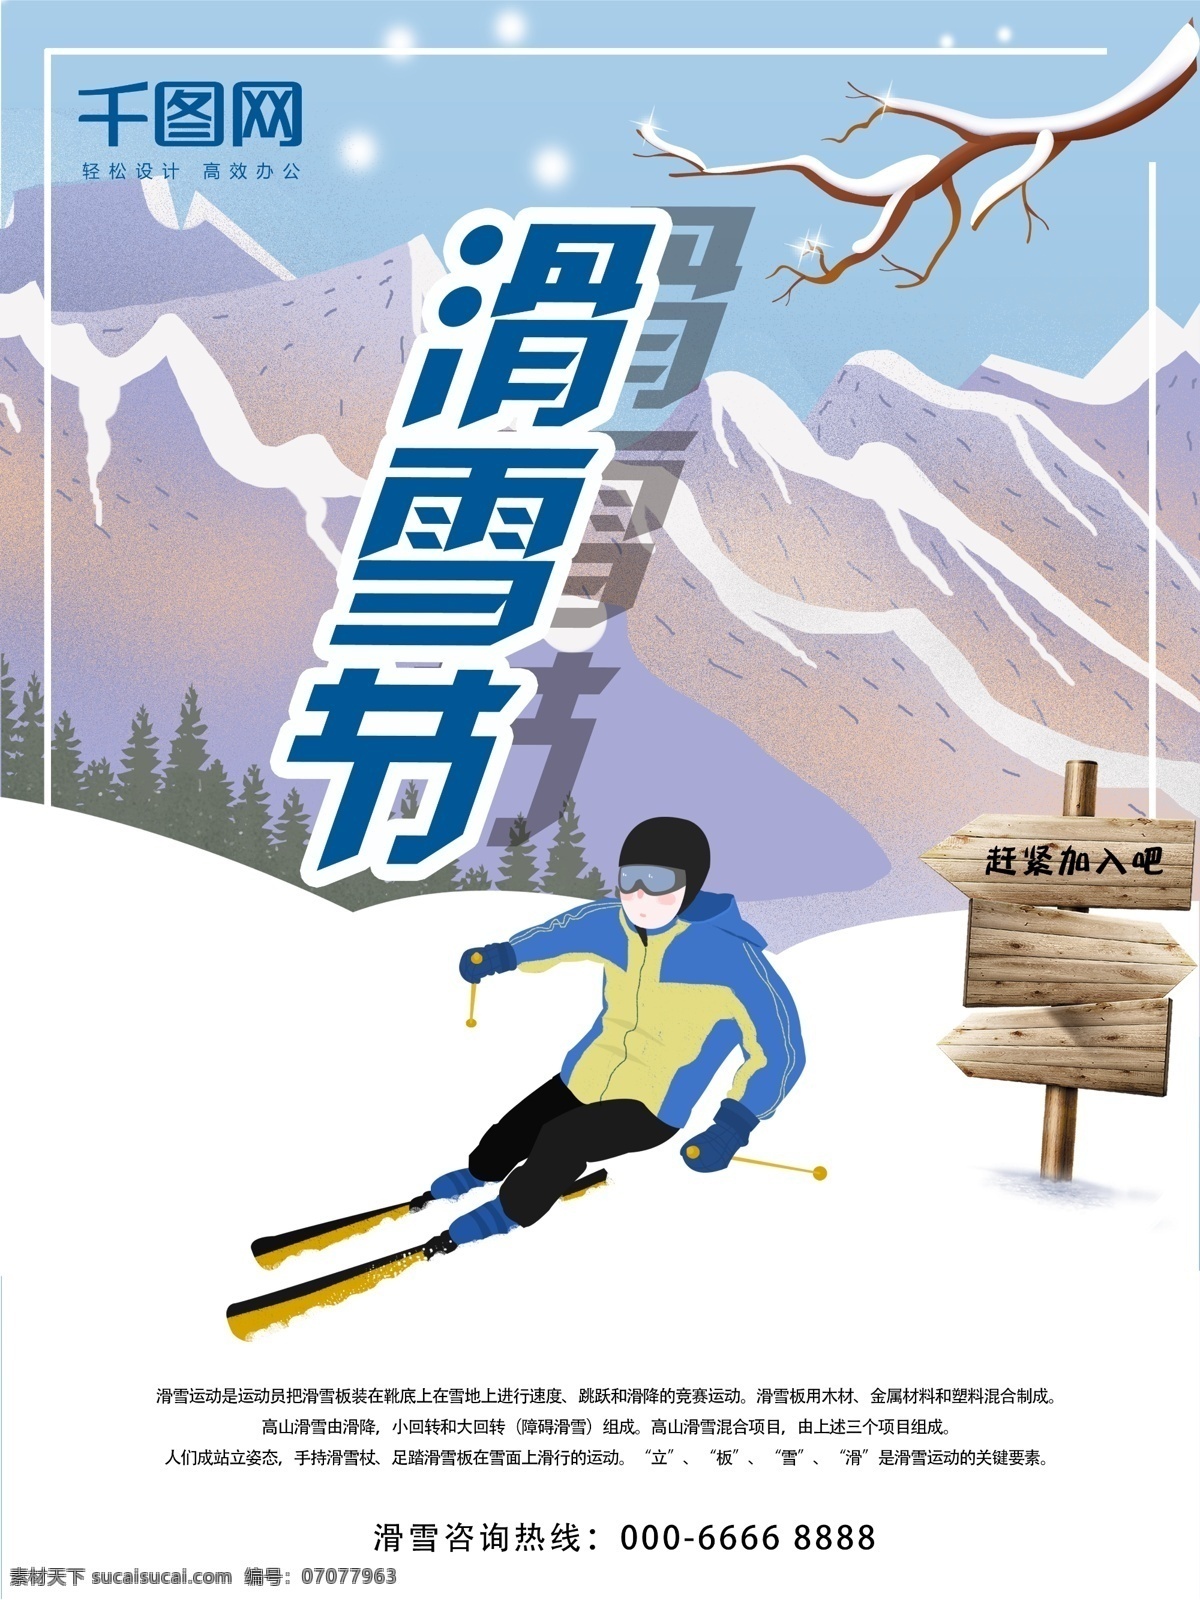 原创 滑雪节 卡通 风格 海报 冬季 滑雪 节日 运动 雪地